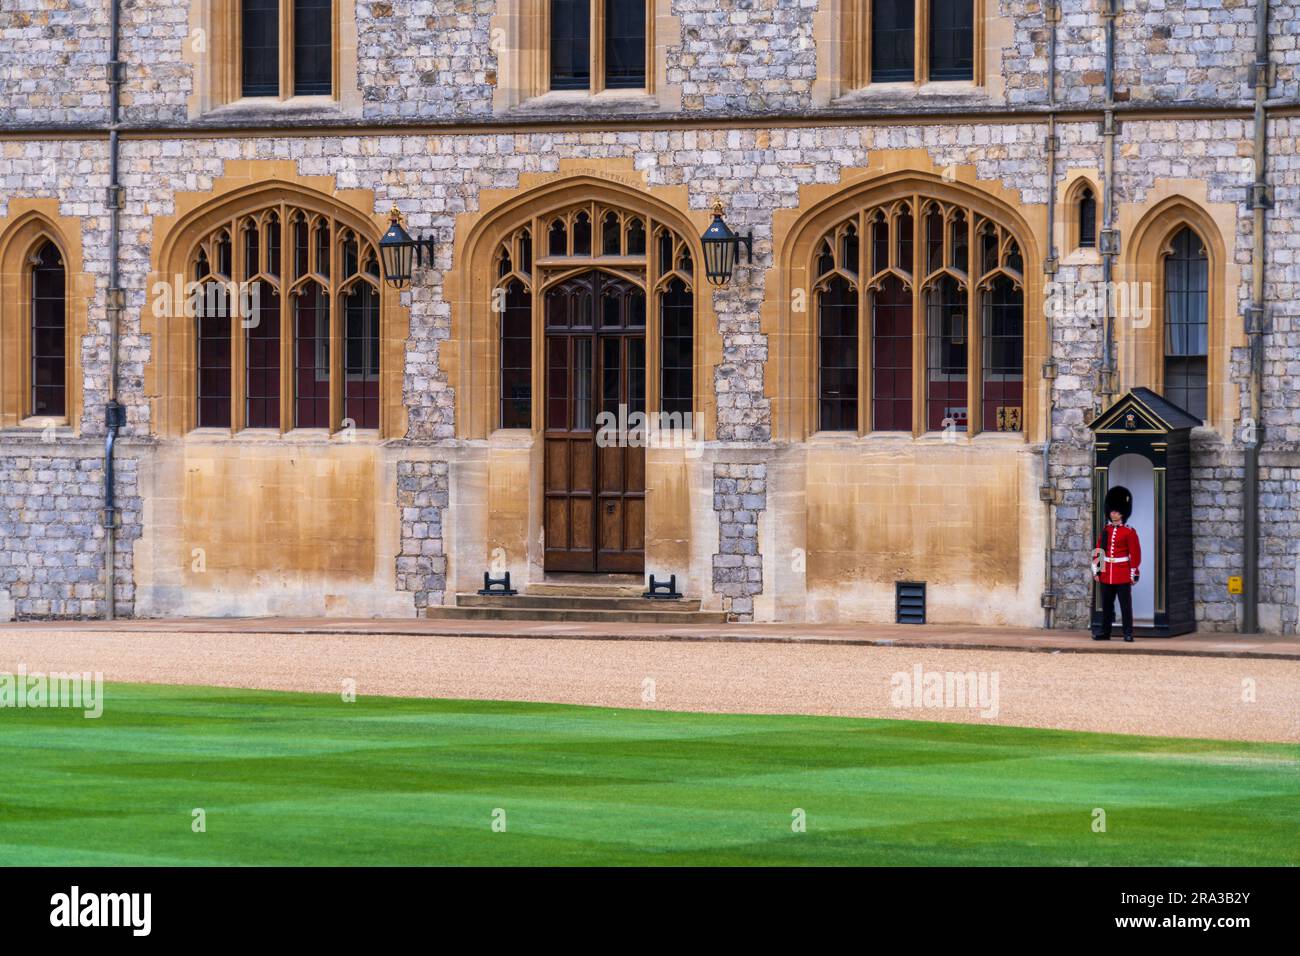 Garde du château de Windsor. Le château de Windsor est l'une des trois résidences officielles du roi et une attraction touristique populaire. Profitez de la relève de la garde Banque D'Images